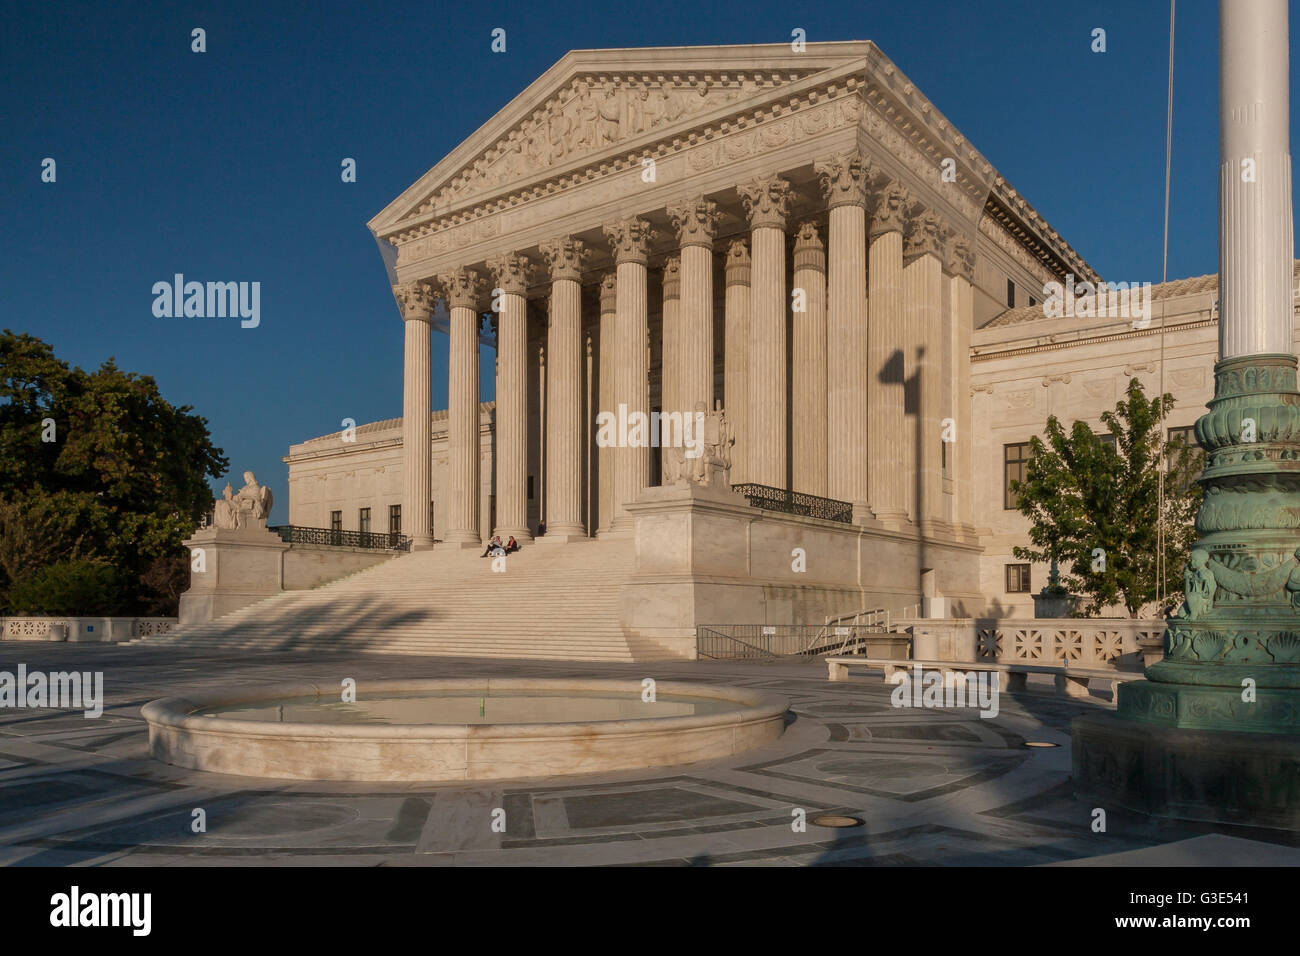 La Cour suprême des États-Unis, Washington DC, USA Banque D'Images